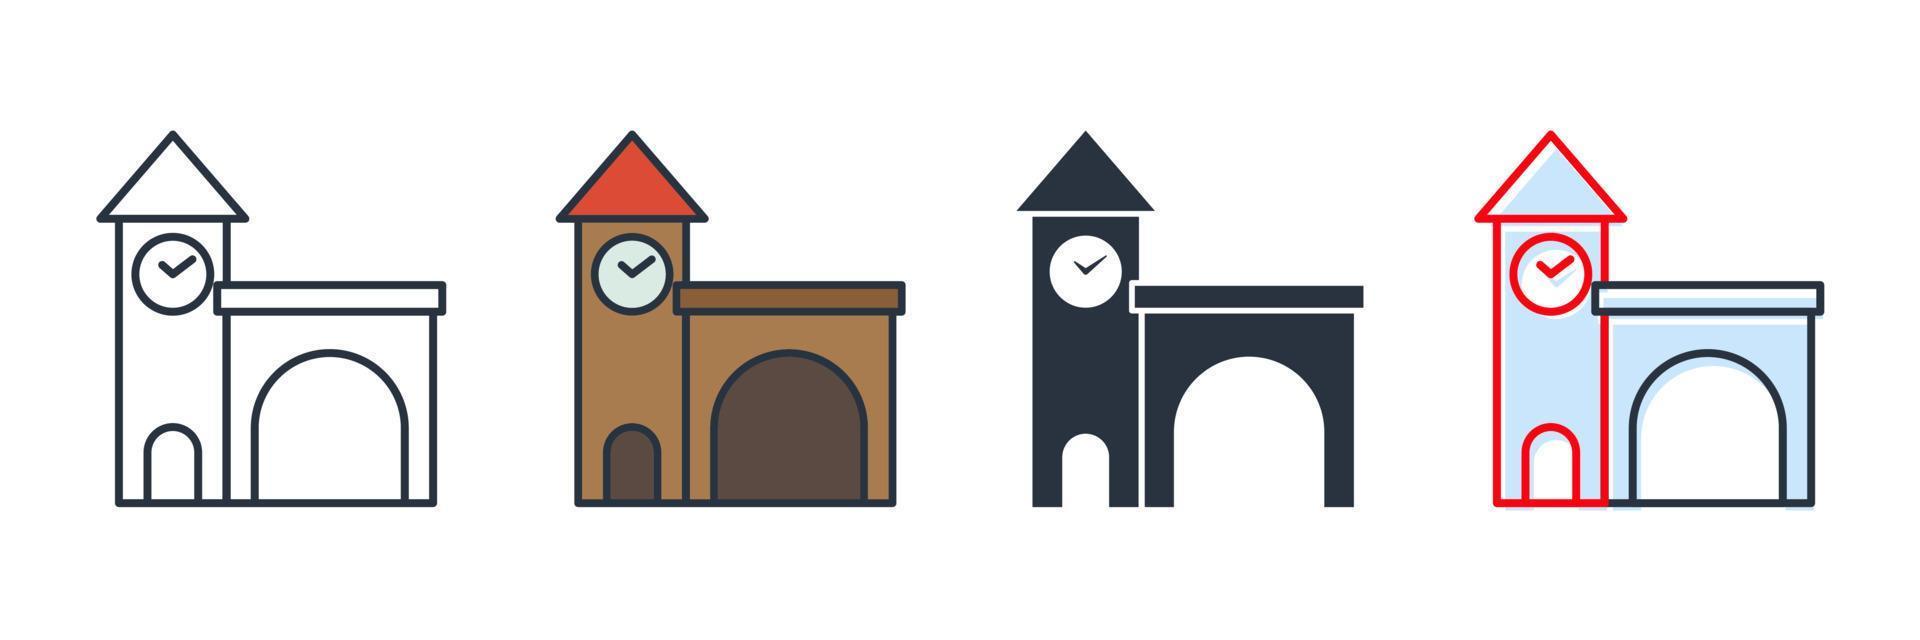 Ilustración de vector de logotipo de icono de edificio de estación de ferrocarril. plantilla de símbolo de estación de tren para la colección de diseño gráfico y web